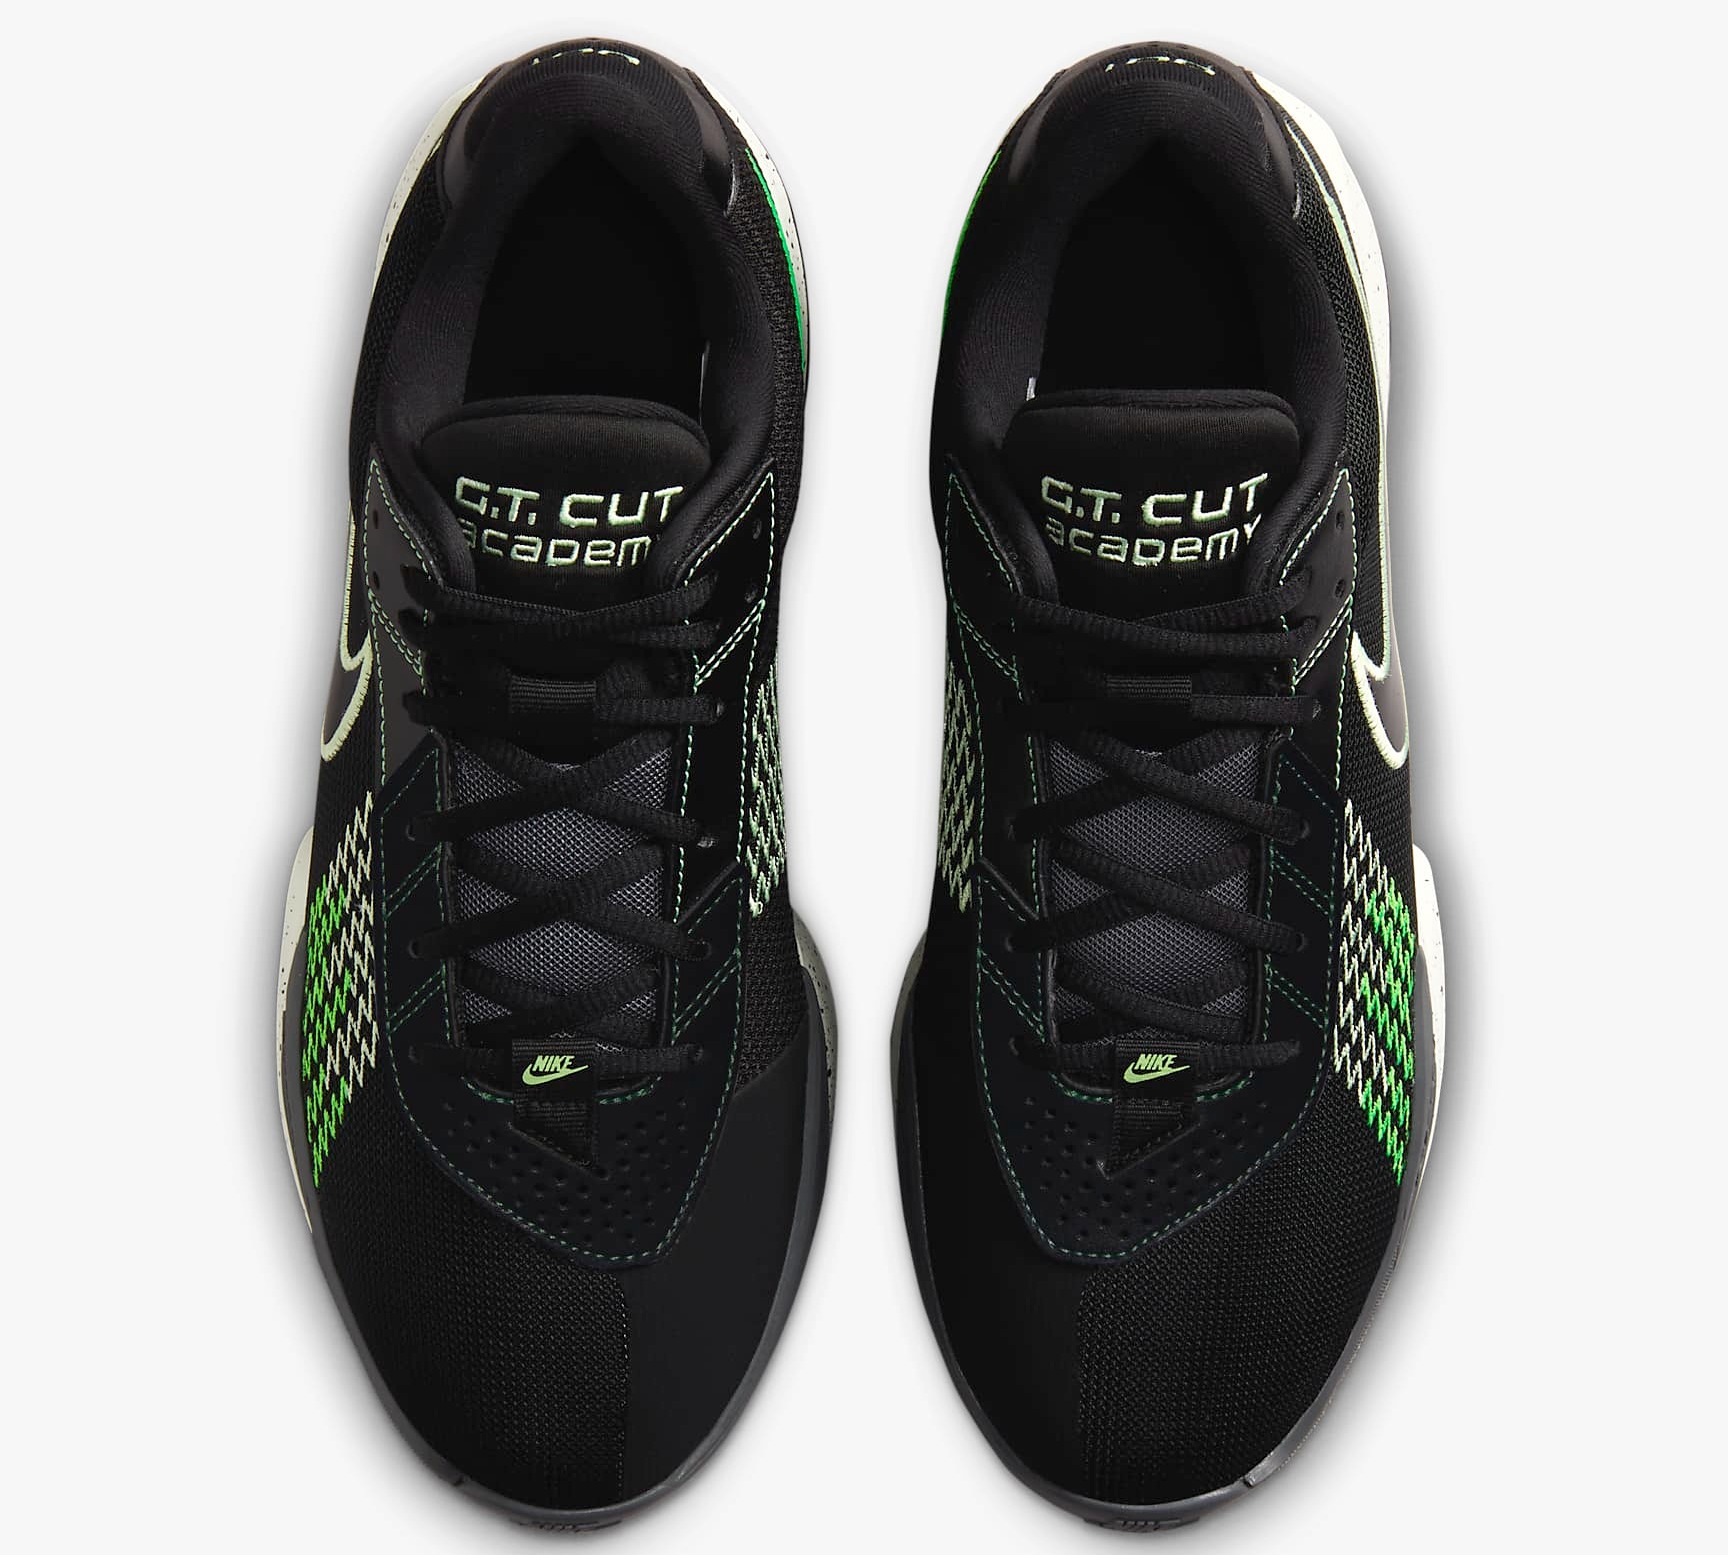 Giày Bóng Rổ Chính Hãng - Nike G.T. Cut Academy ''Black'' - FB2598-001